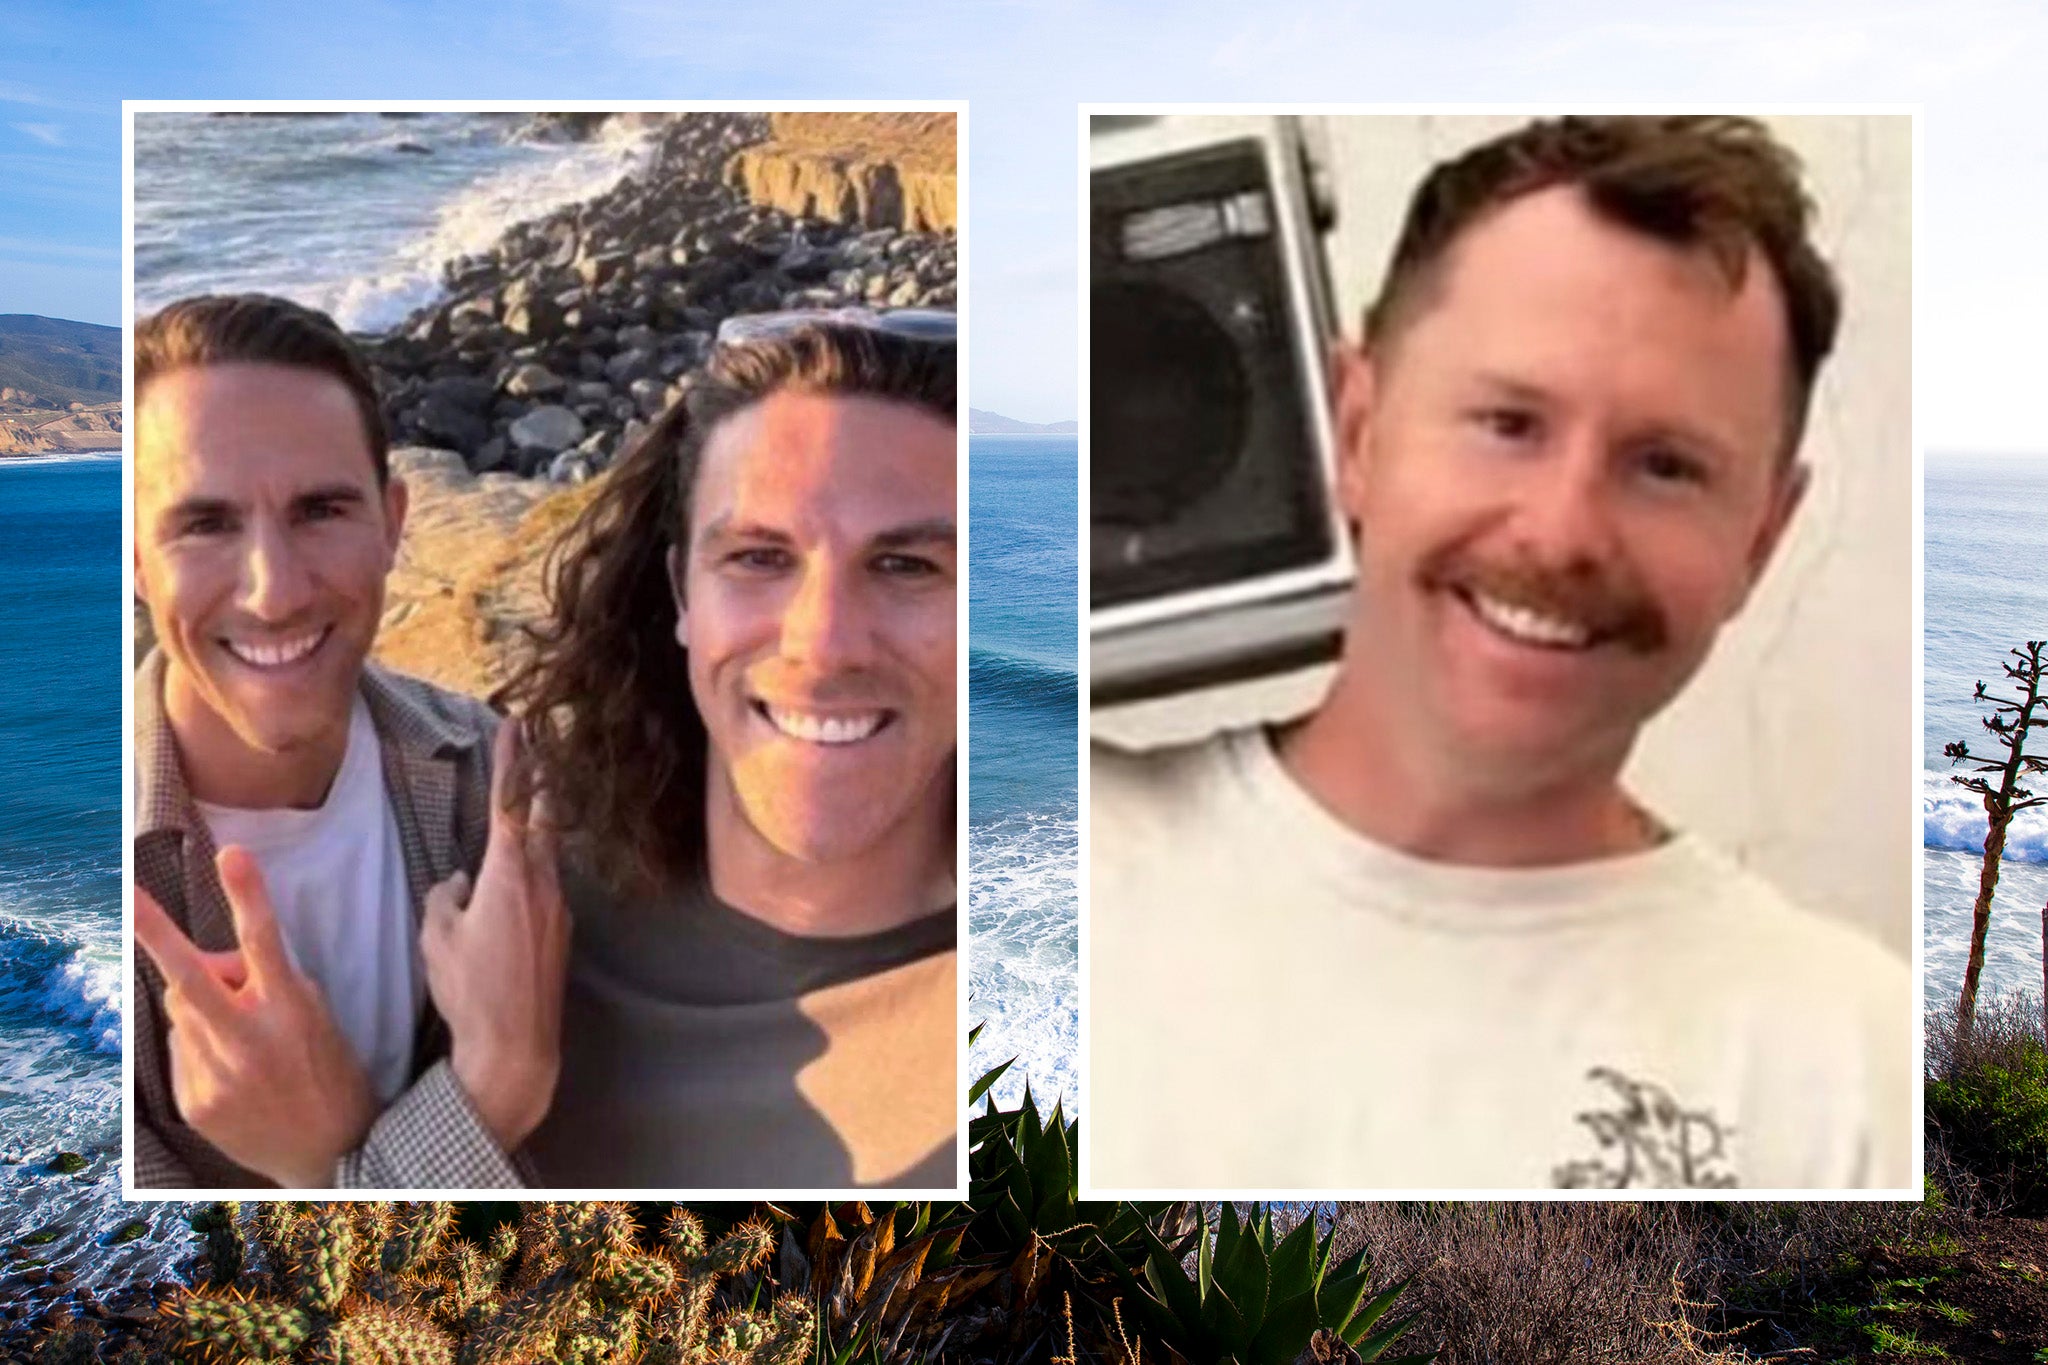 Los hermanos australianos Jake y Callum Robinson y su amigo estadounidense Carter Rhoad fueron asesinados a balazos en México durante un viaje para practicar surf